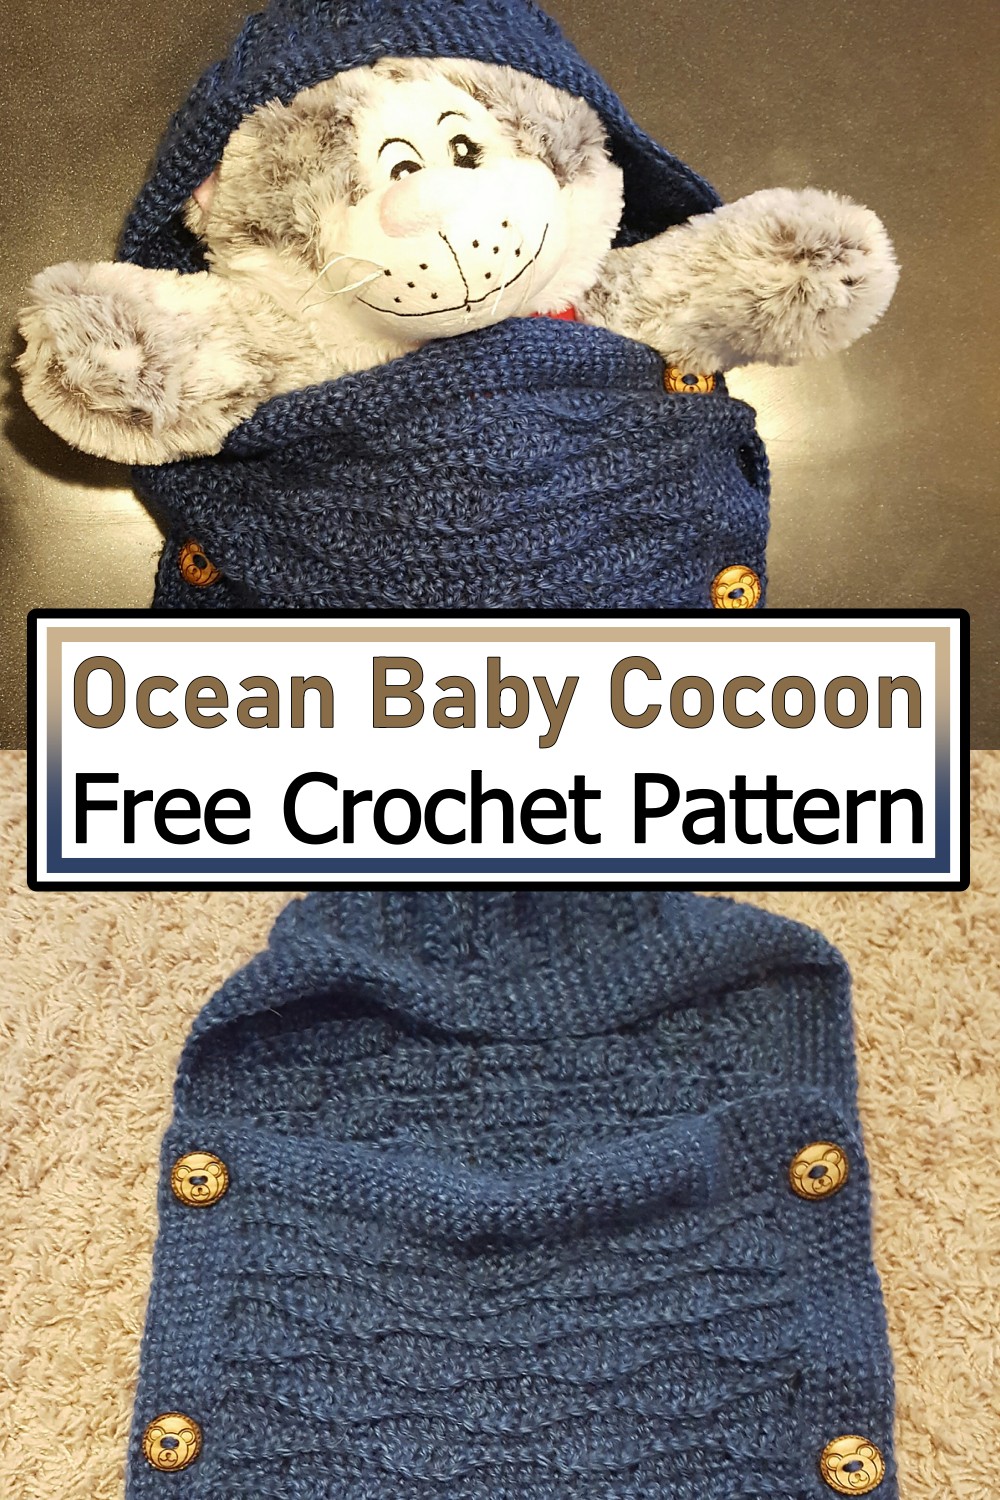 Ocean Baby Cocoon